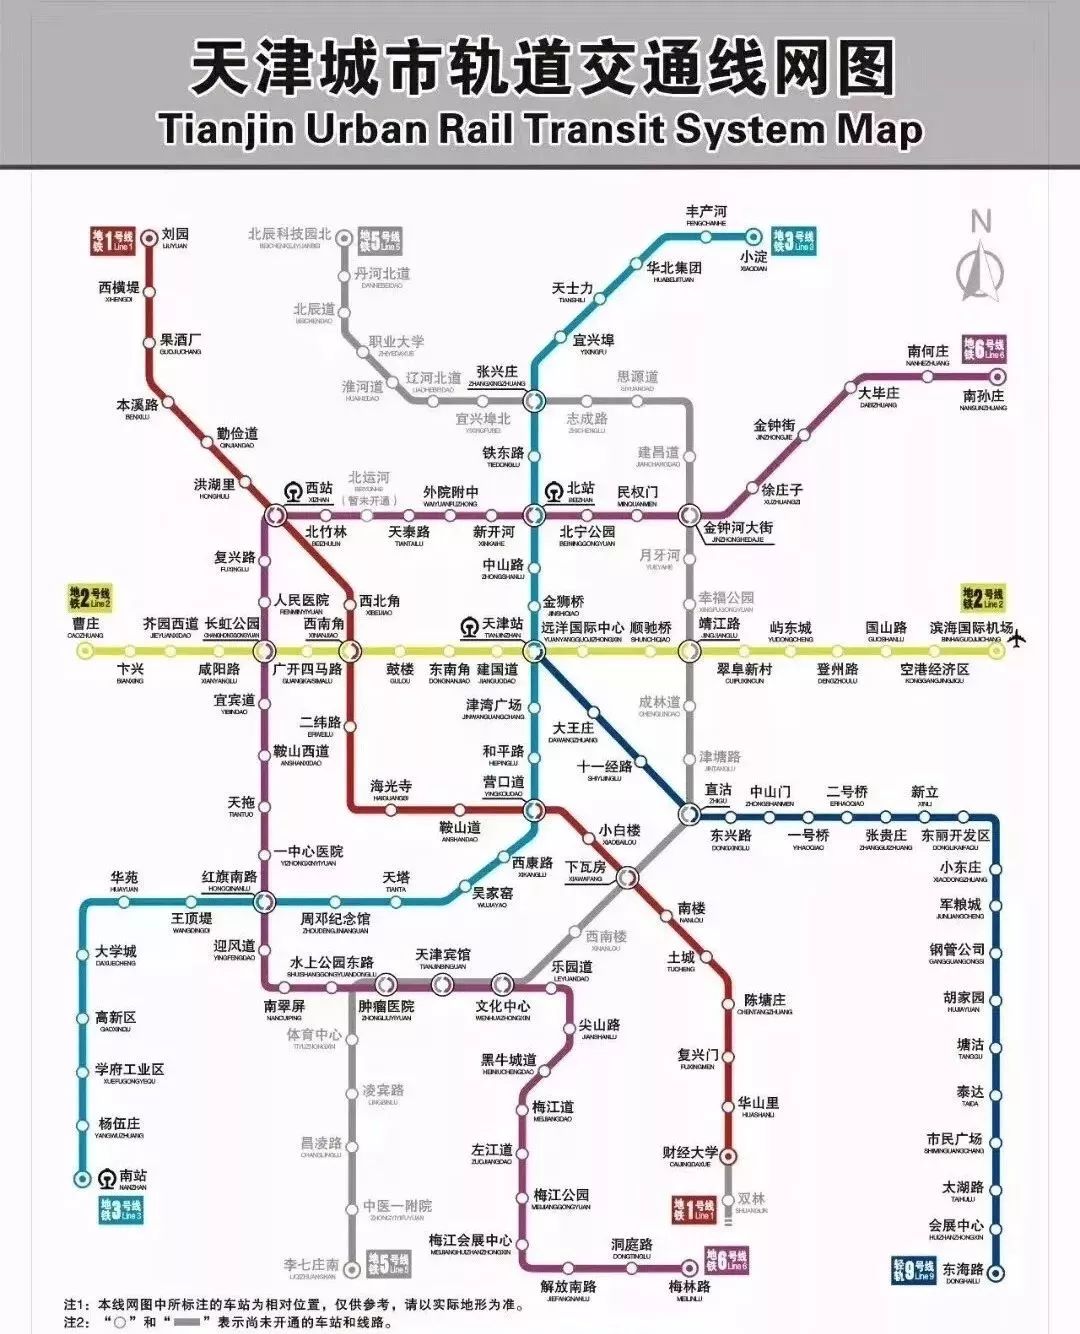 天津地铁5号线今早开通试运营!开通车站26座,最小间隔6分钟